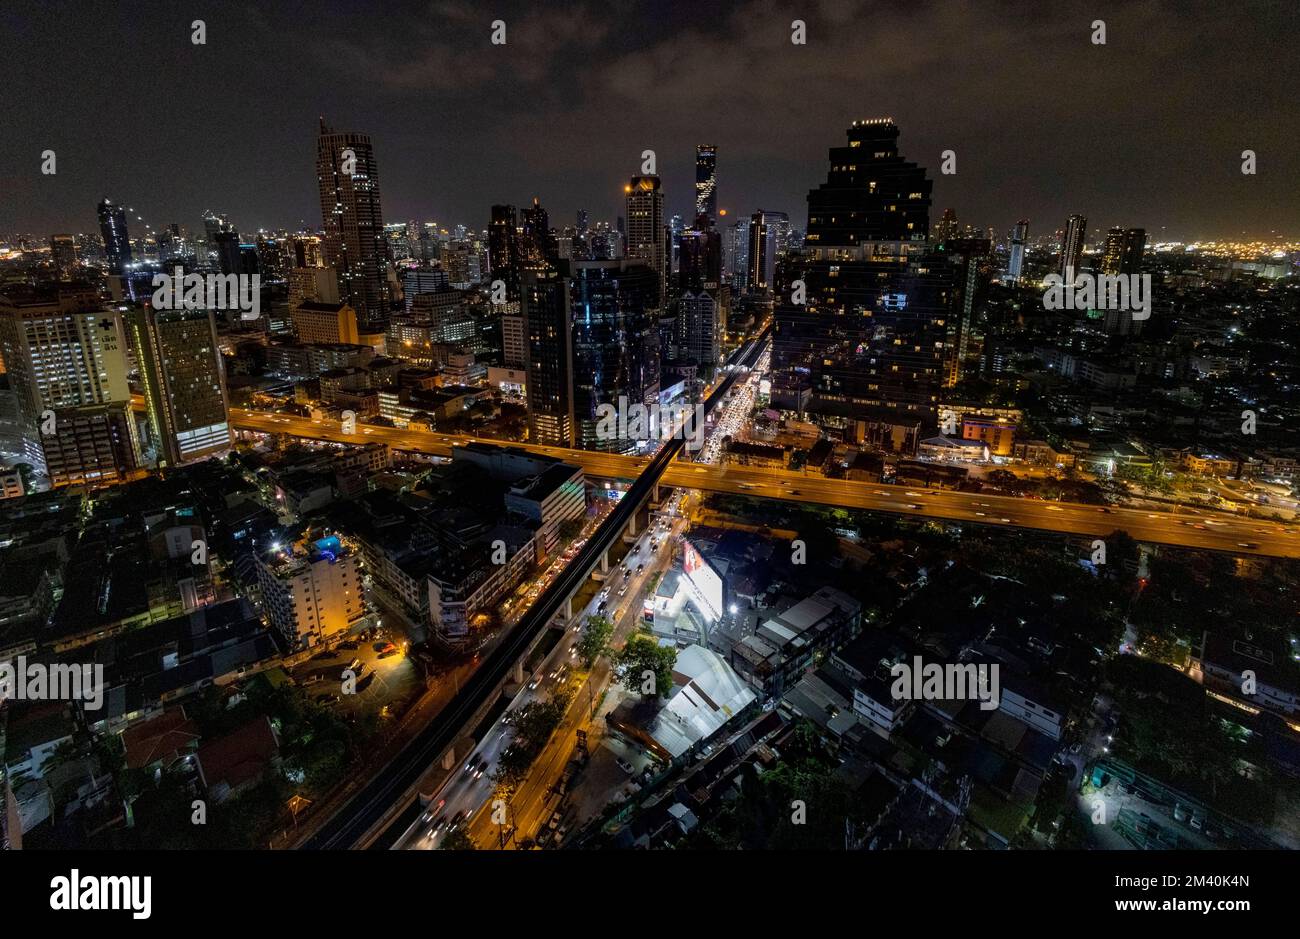 pic montre: "Cold Moon" - la Lune s'élève au-dessus du bâtiment Mahanakhon, Bangkok en Thaïlande. La pleine lune de décembre, également connue sous le nom de « lune froide », brillera b Banque D'Images